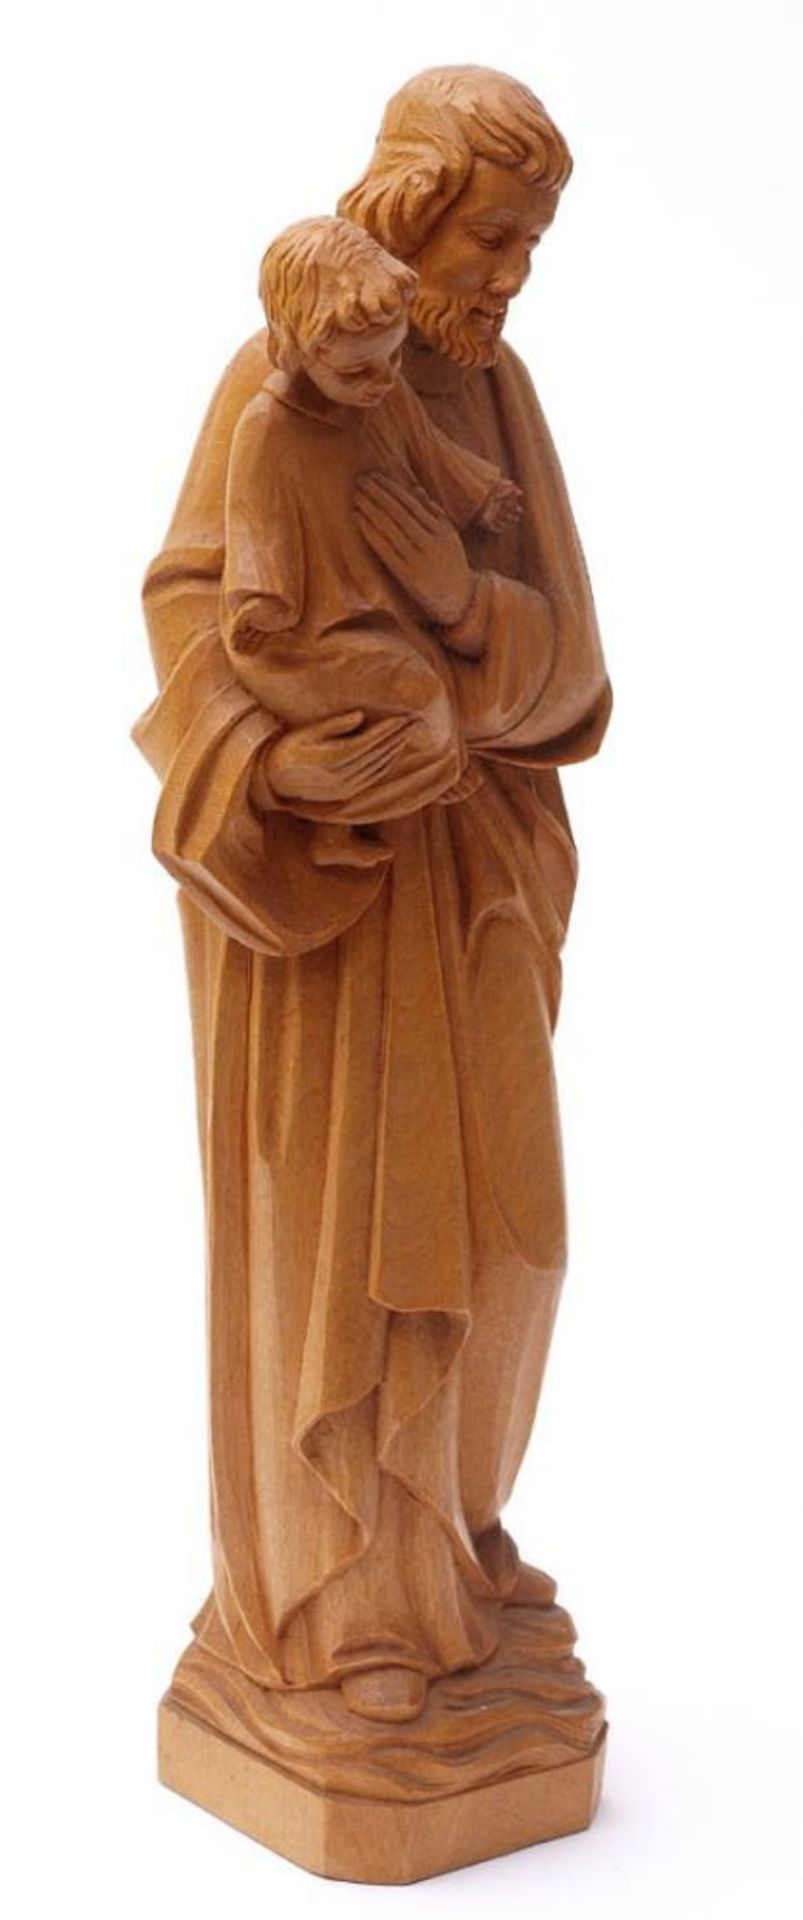 Holzfigur Hl. Joseph mit Jesuskind. Lindenholz, vollrund geschnitzt. H.32cm. - Bild 3 aus 3